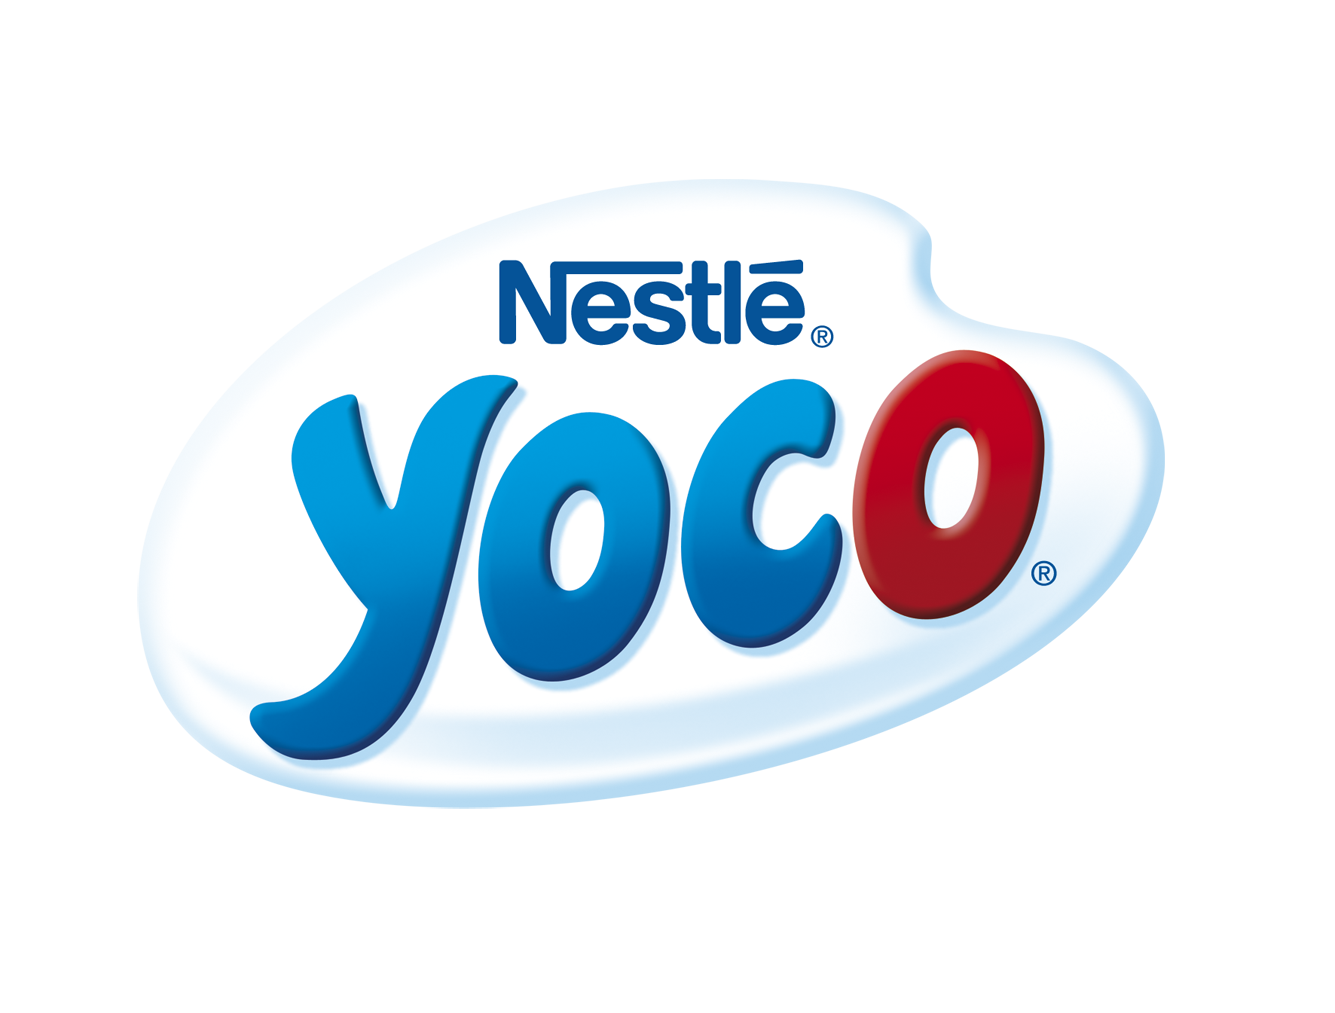 Nestlé Yoco